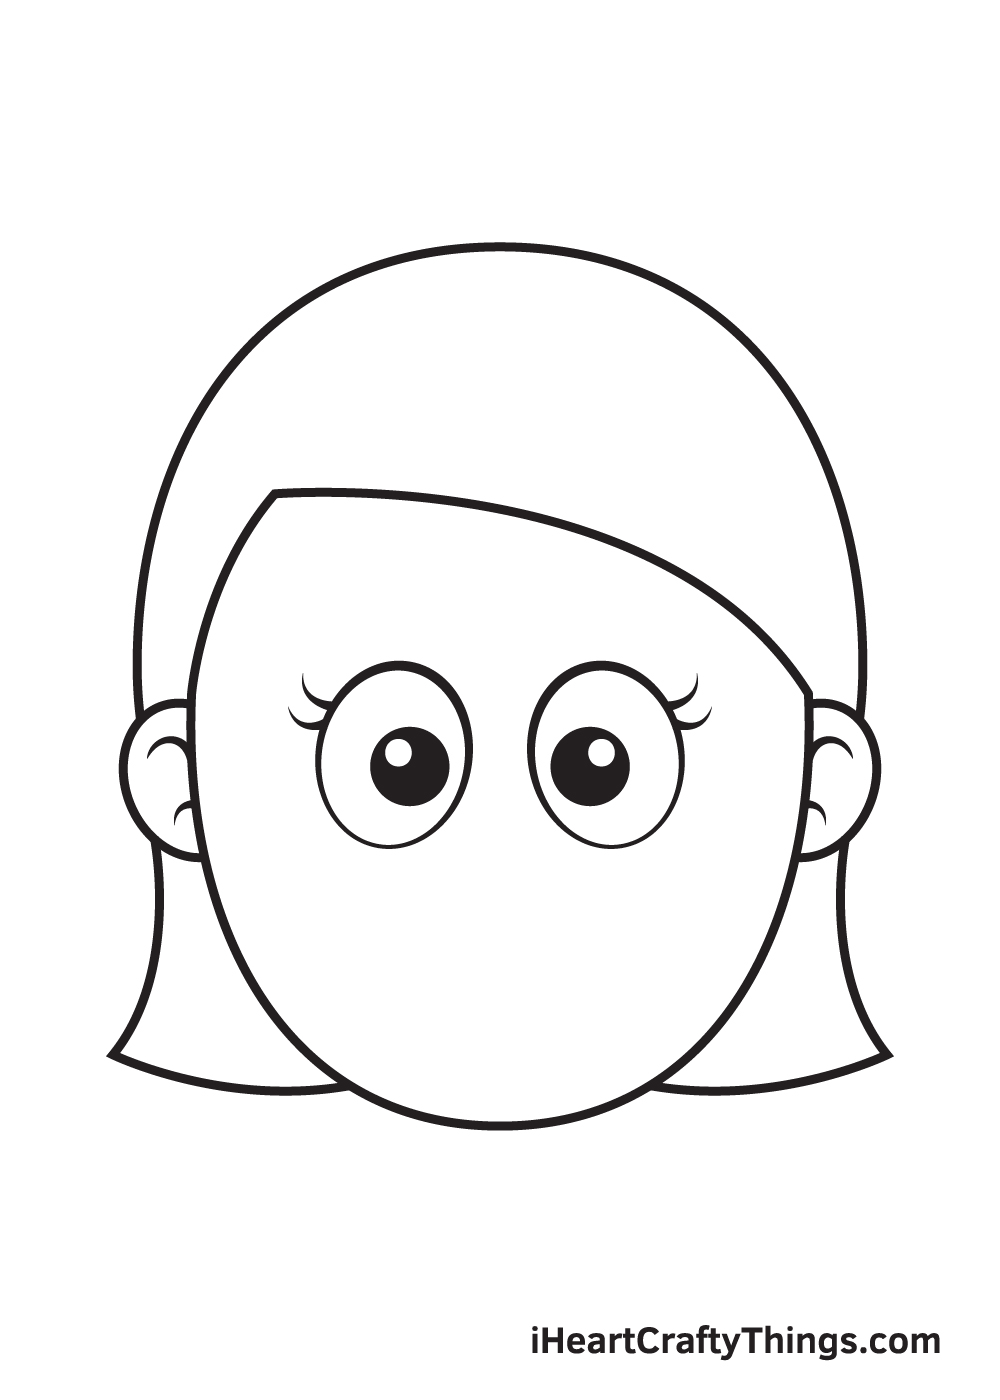 Vẽ khuôn mặt cô gái - Bước 4